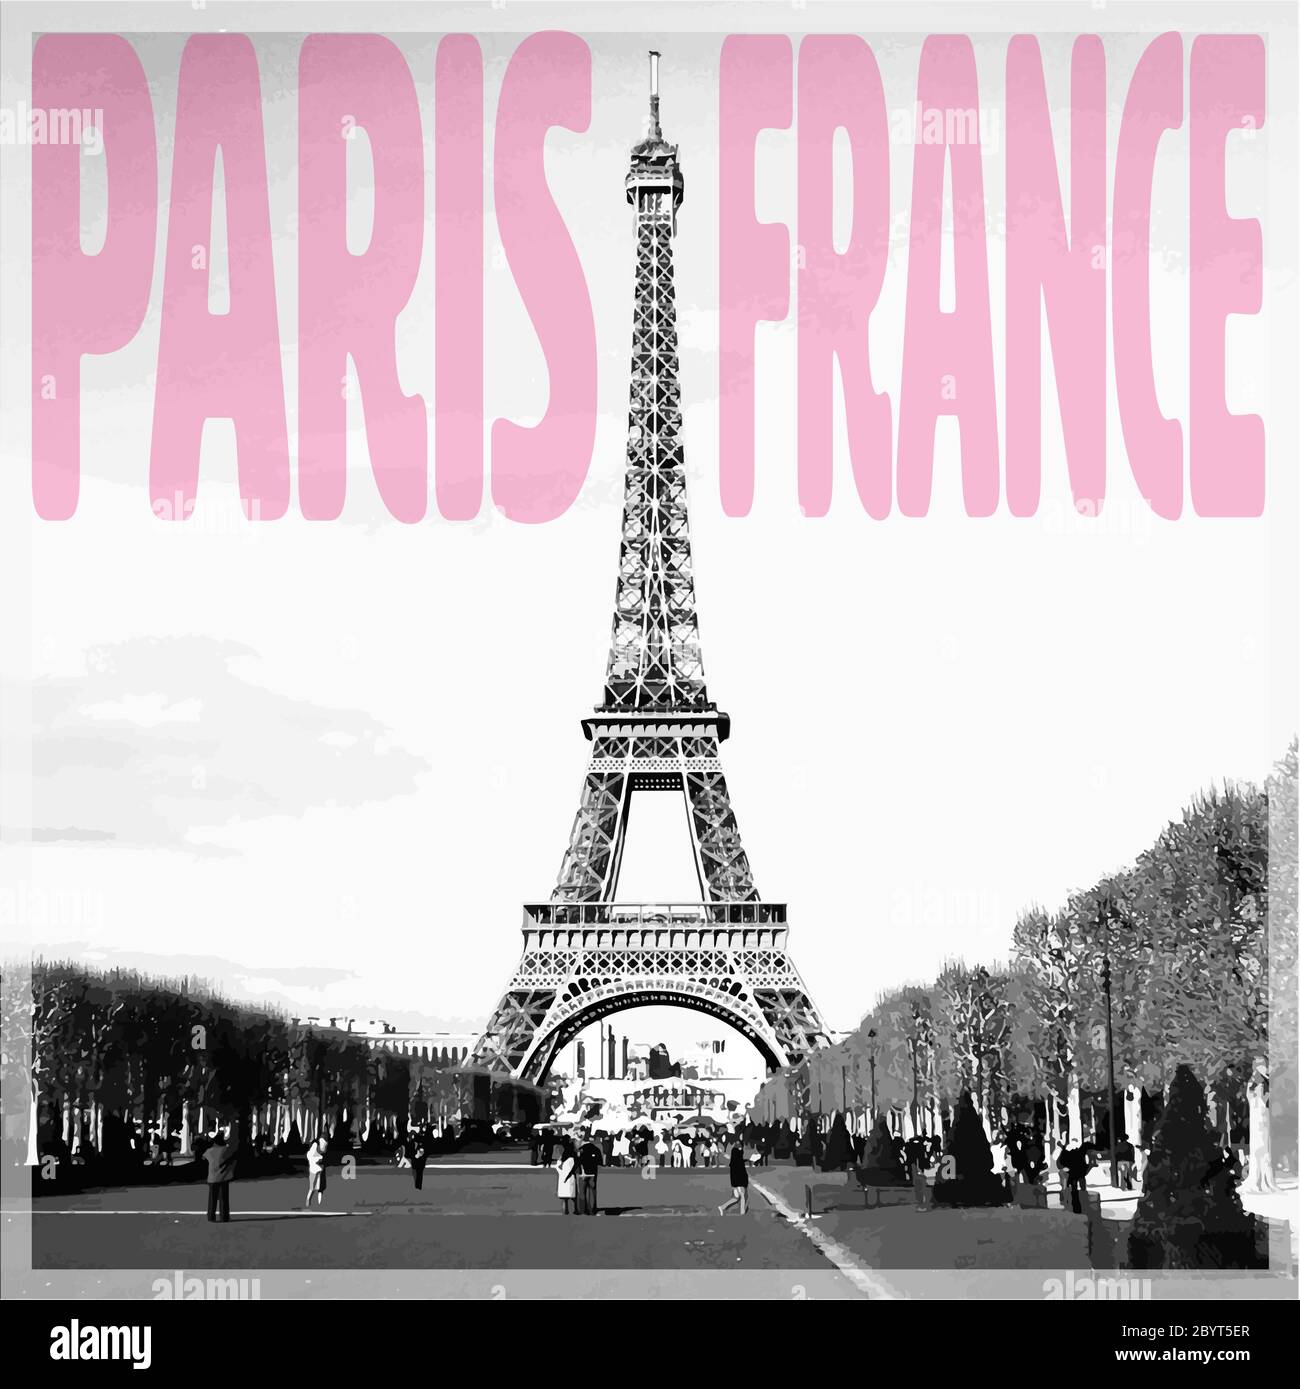 Paris Francia - Tarjeta romántica con cita rosa y foto vectorizada de la Torre Eiffel en blanco y negro Ilustración del Vector